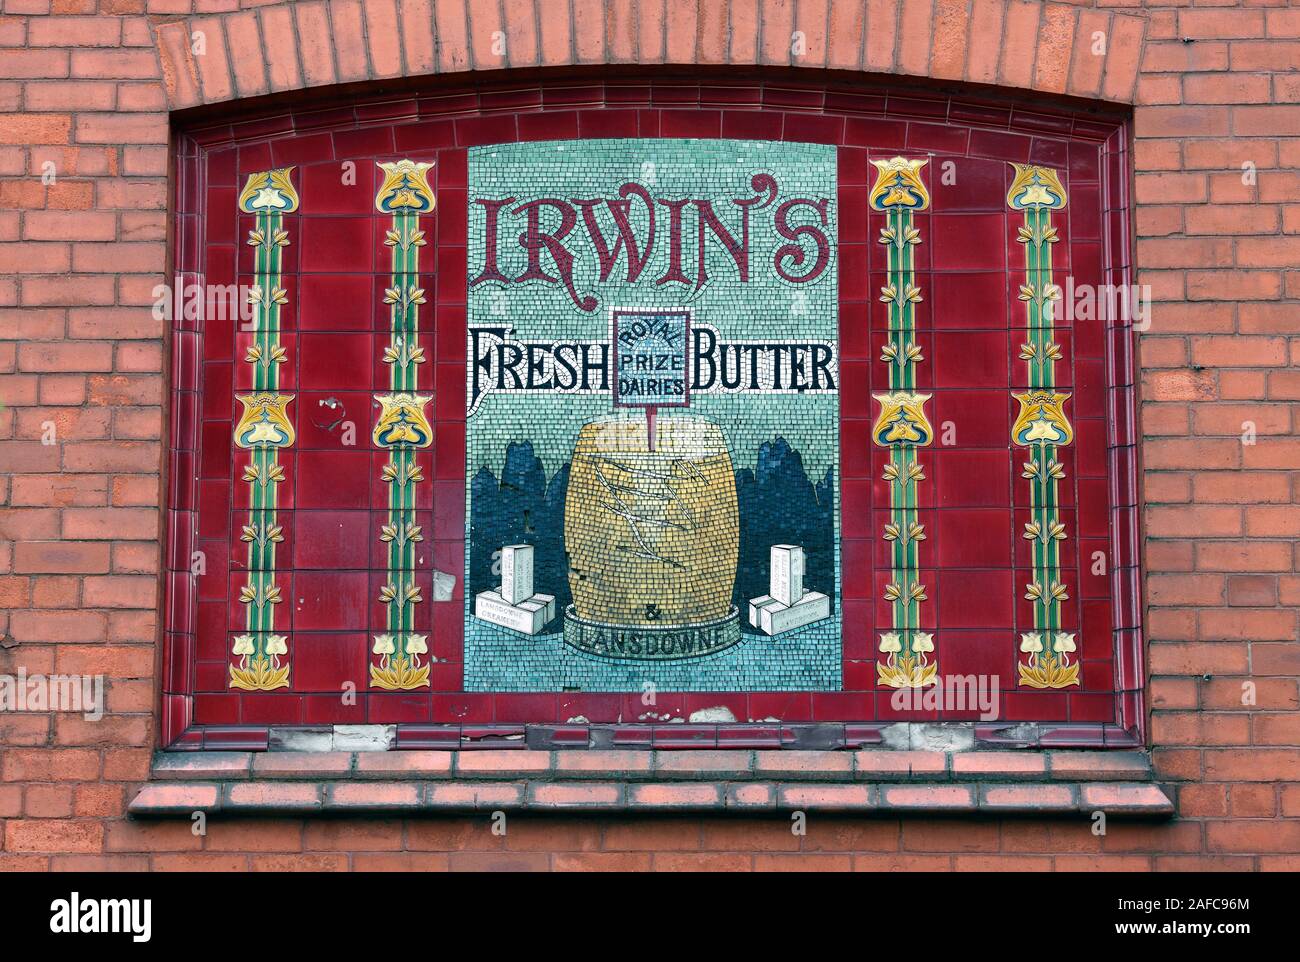 Ancienne publicité pour Irwin's beurre frais, en mosaïque et carrelage (avec touches Art Nouveau), sur un mur de brique, Allerton Road, Liverpool. Banque D'Images